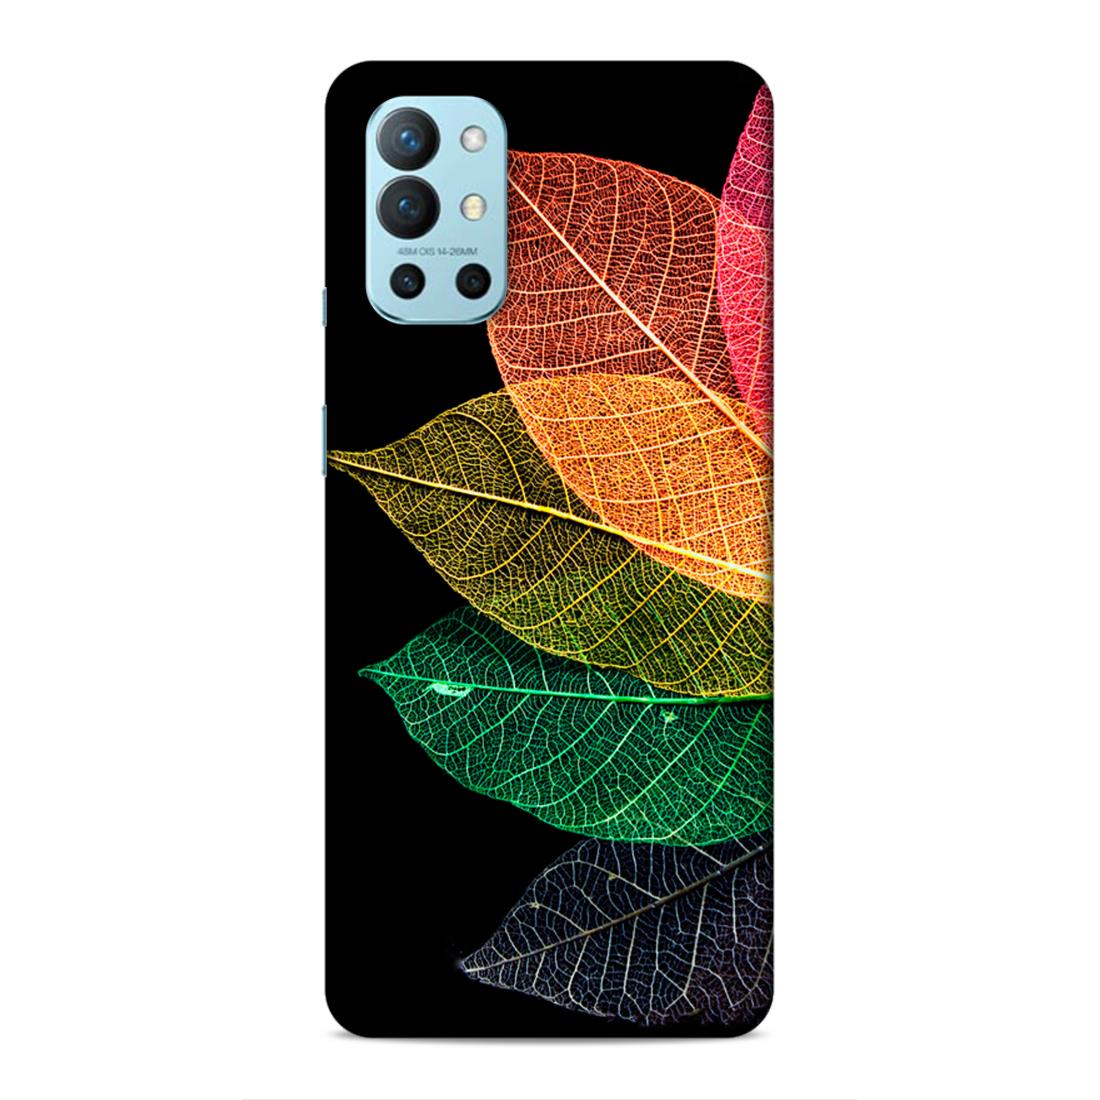 Leaf Hard Back Case For OnePlus 8T / 9R